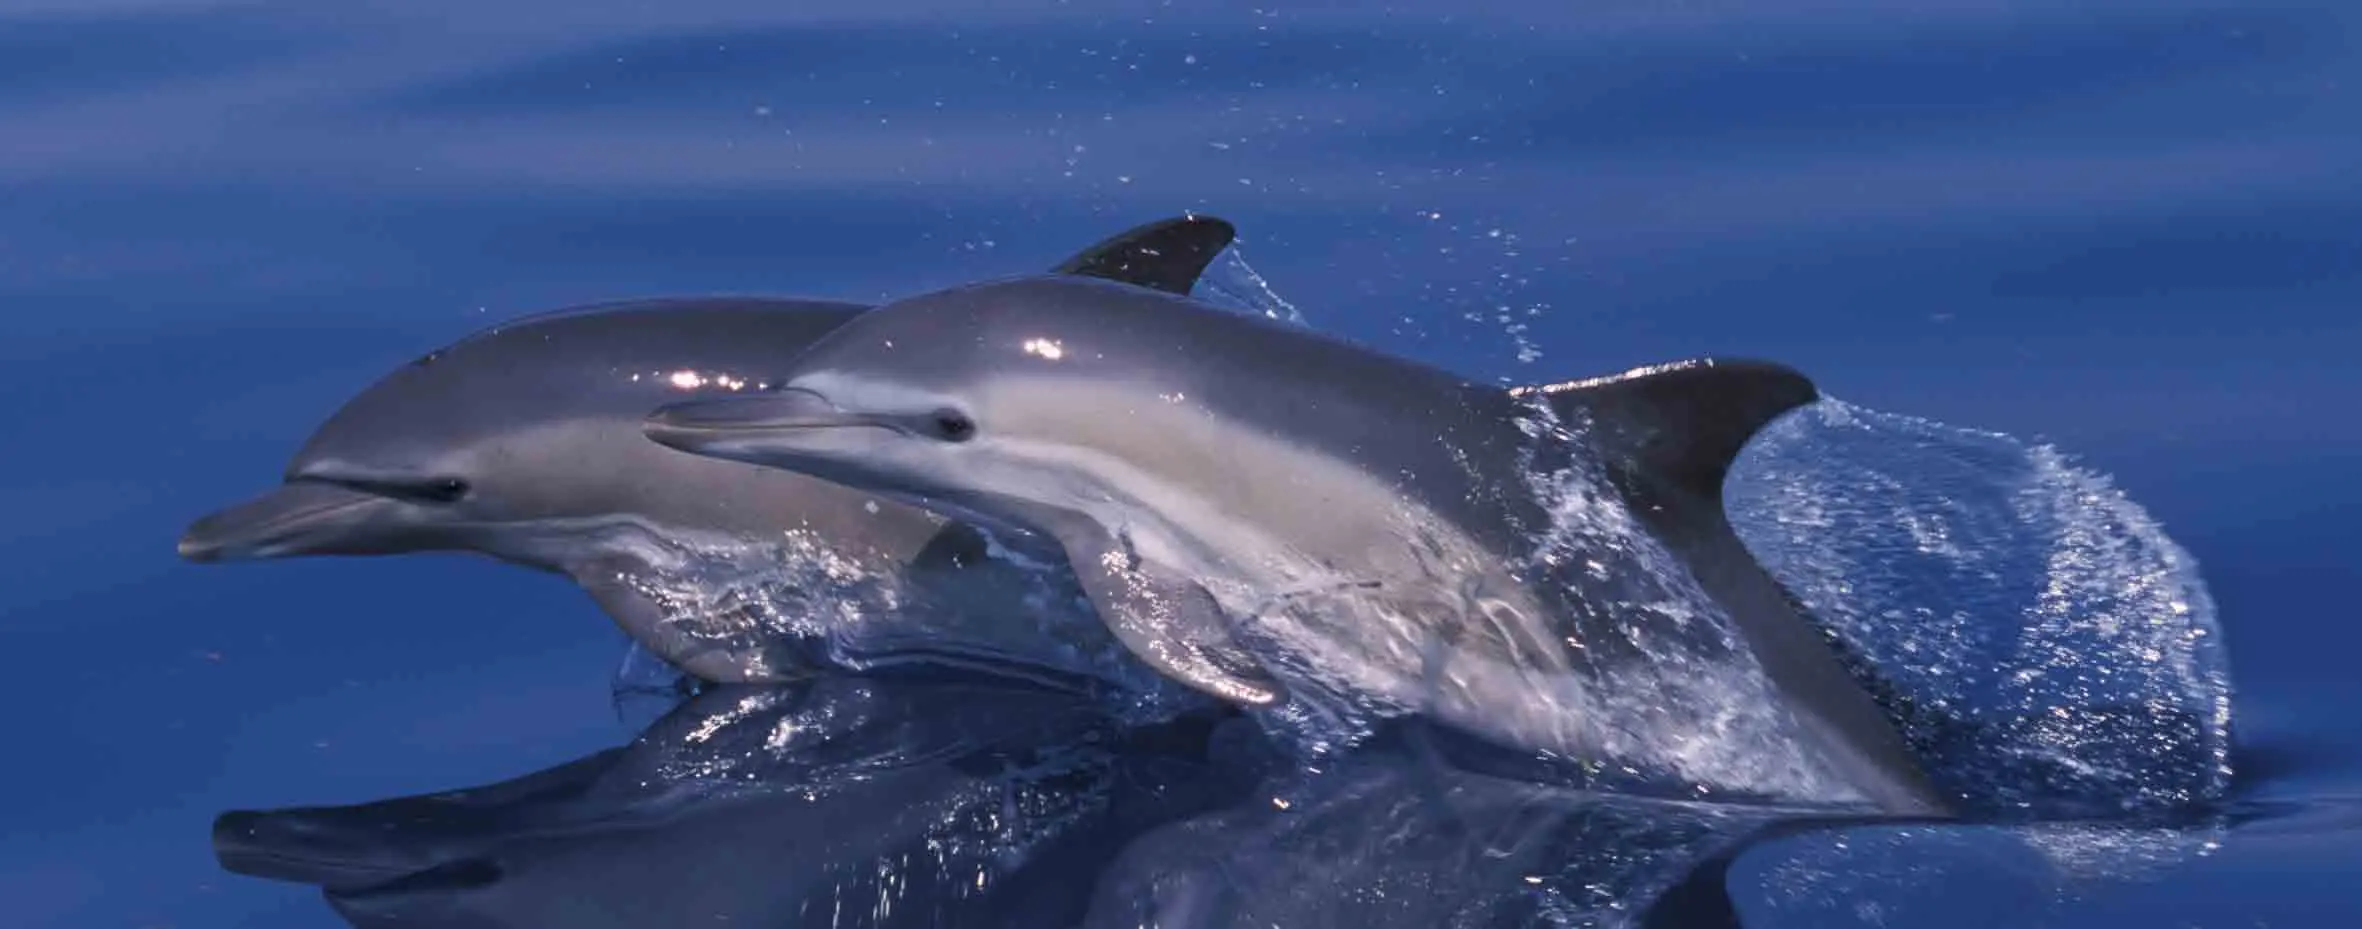 Short-beaked Common Dolphins - Endangered